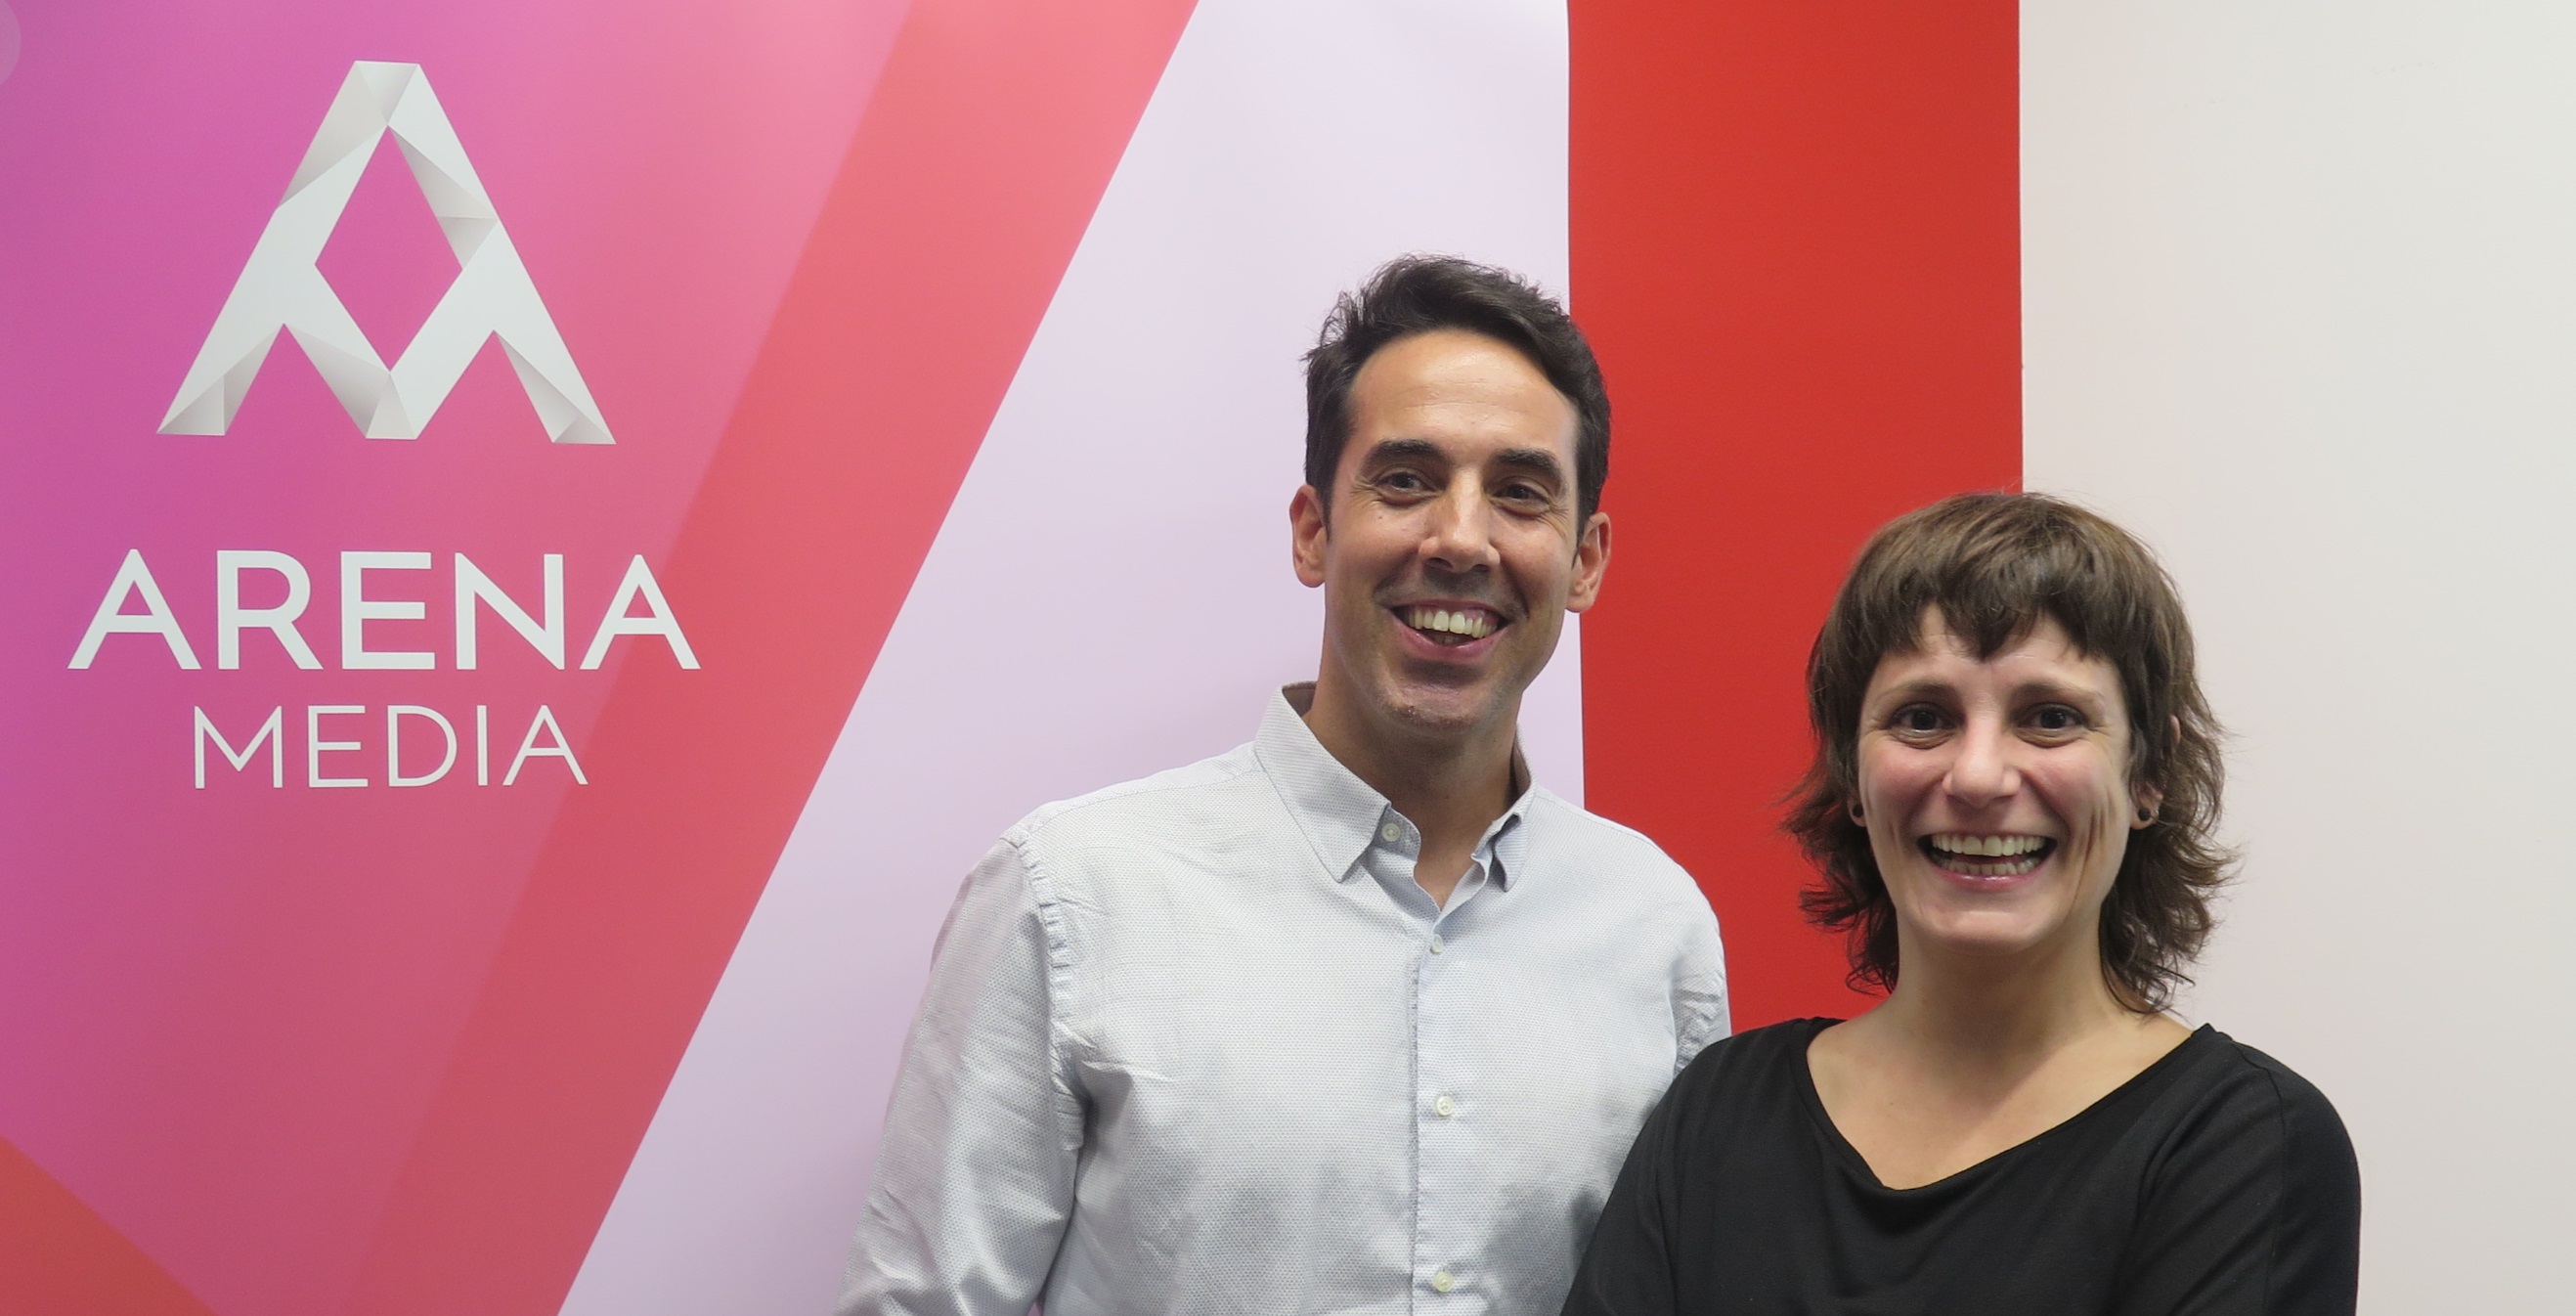 Marta Fabra nueva Analista de Media Performance de Arena Media España. , en su nuevo puesto, se encargará del desarrollo y optimización de sistemas de análisis de eficiencia en medios, con especial foco en el mercado digital.